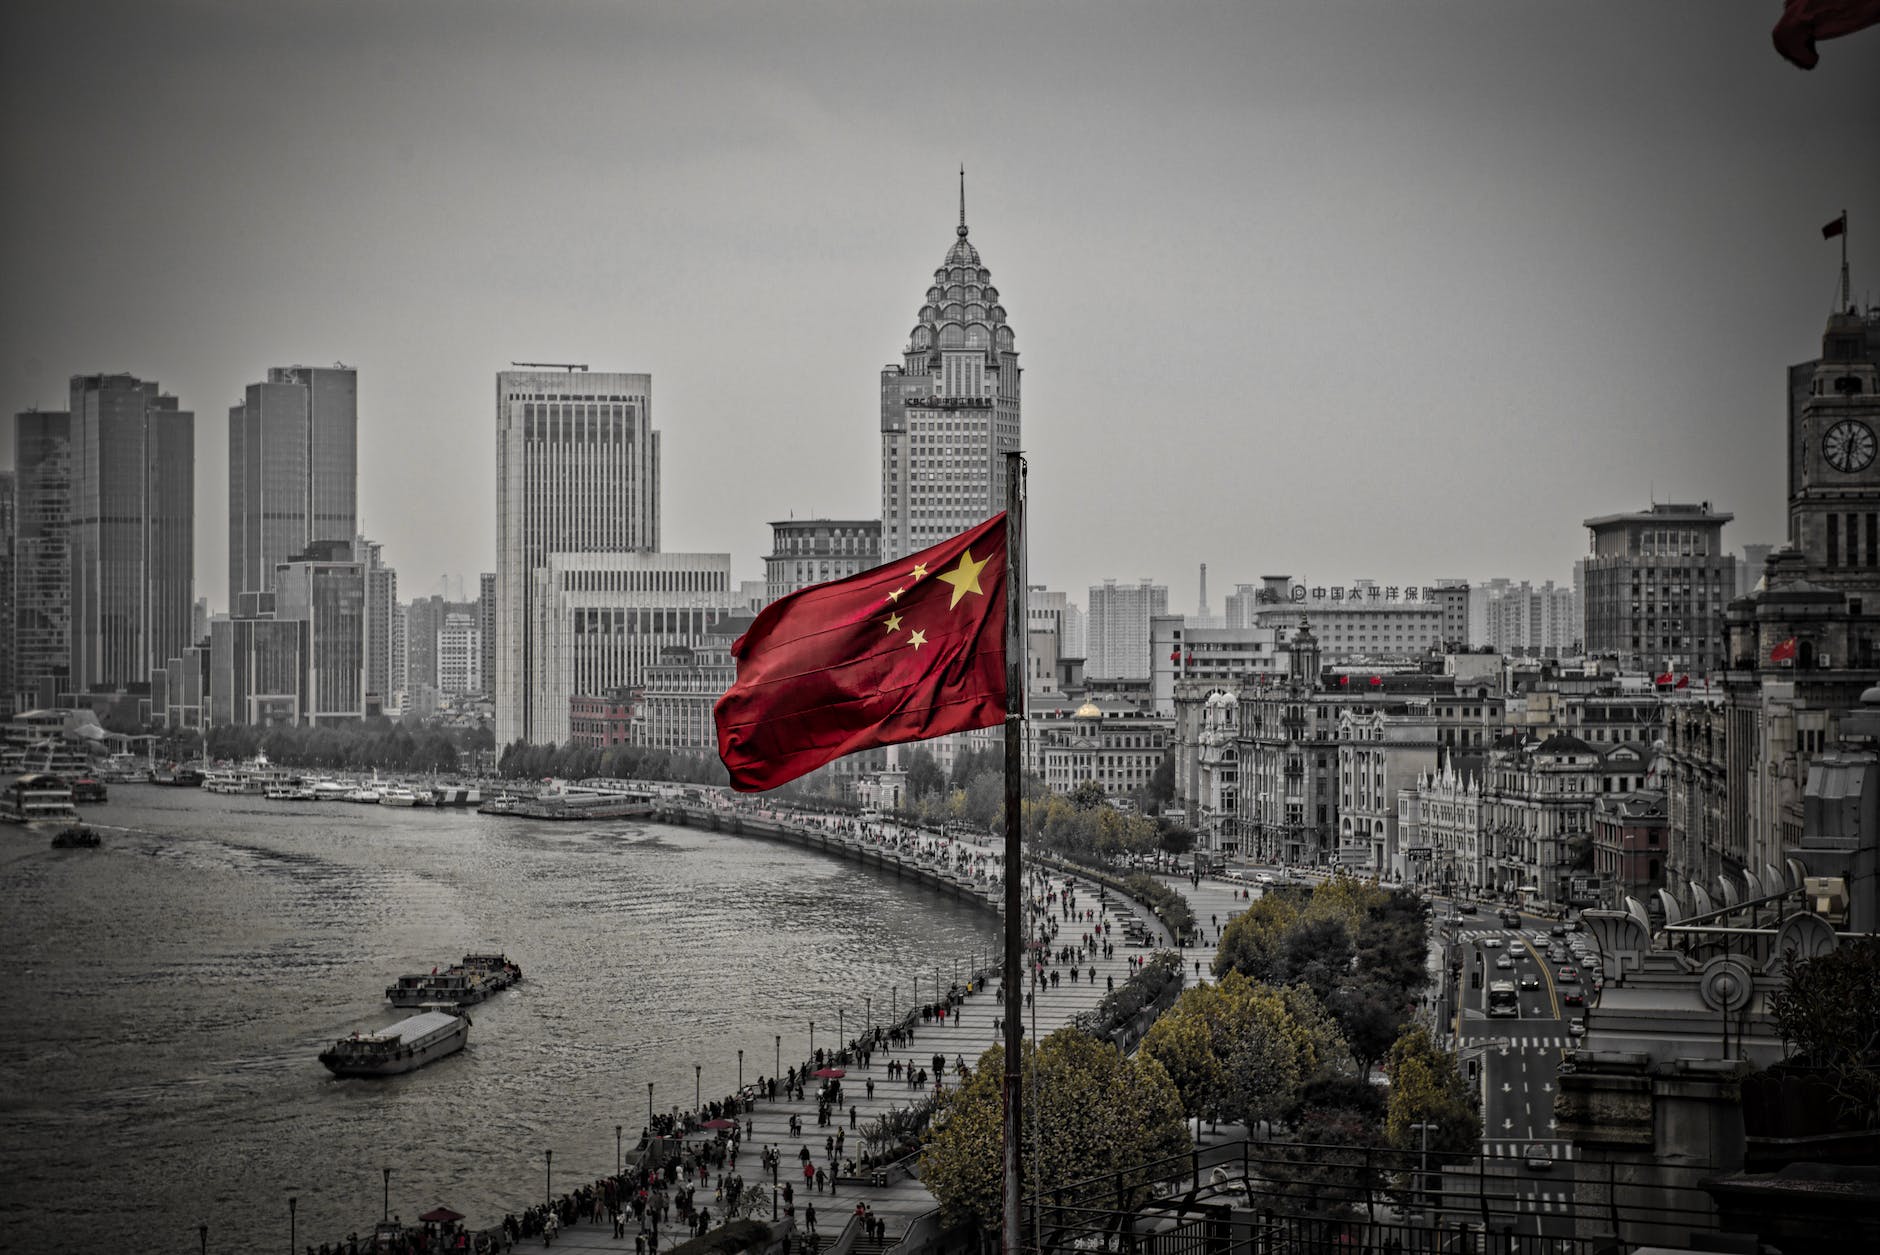 kitajska zastava, ki plapola nad mestom